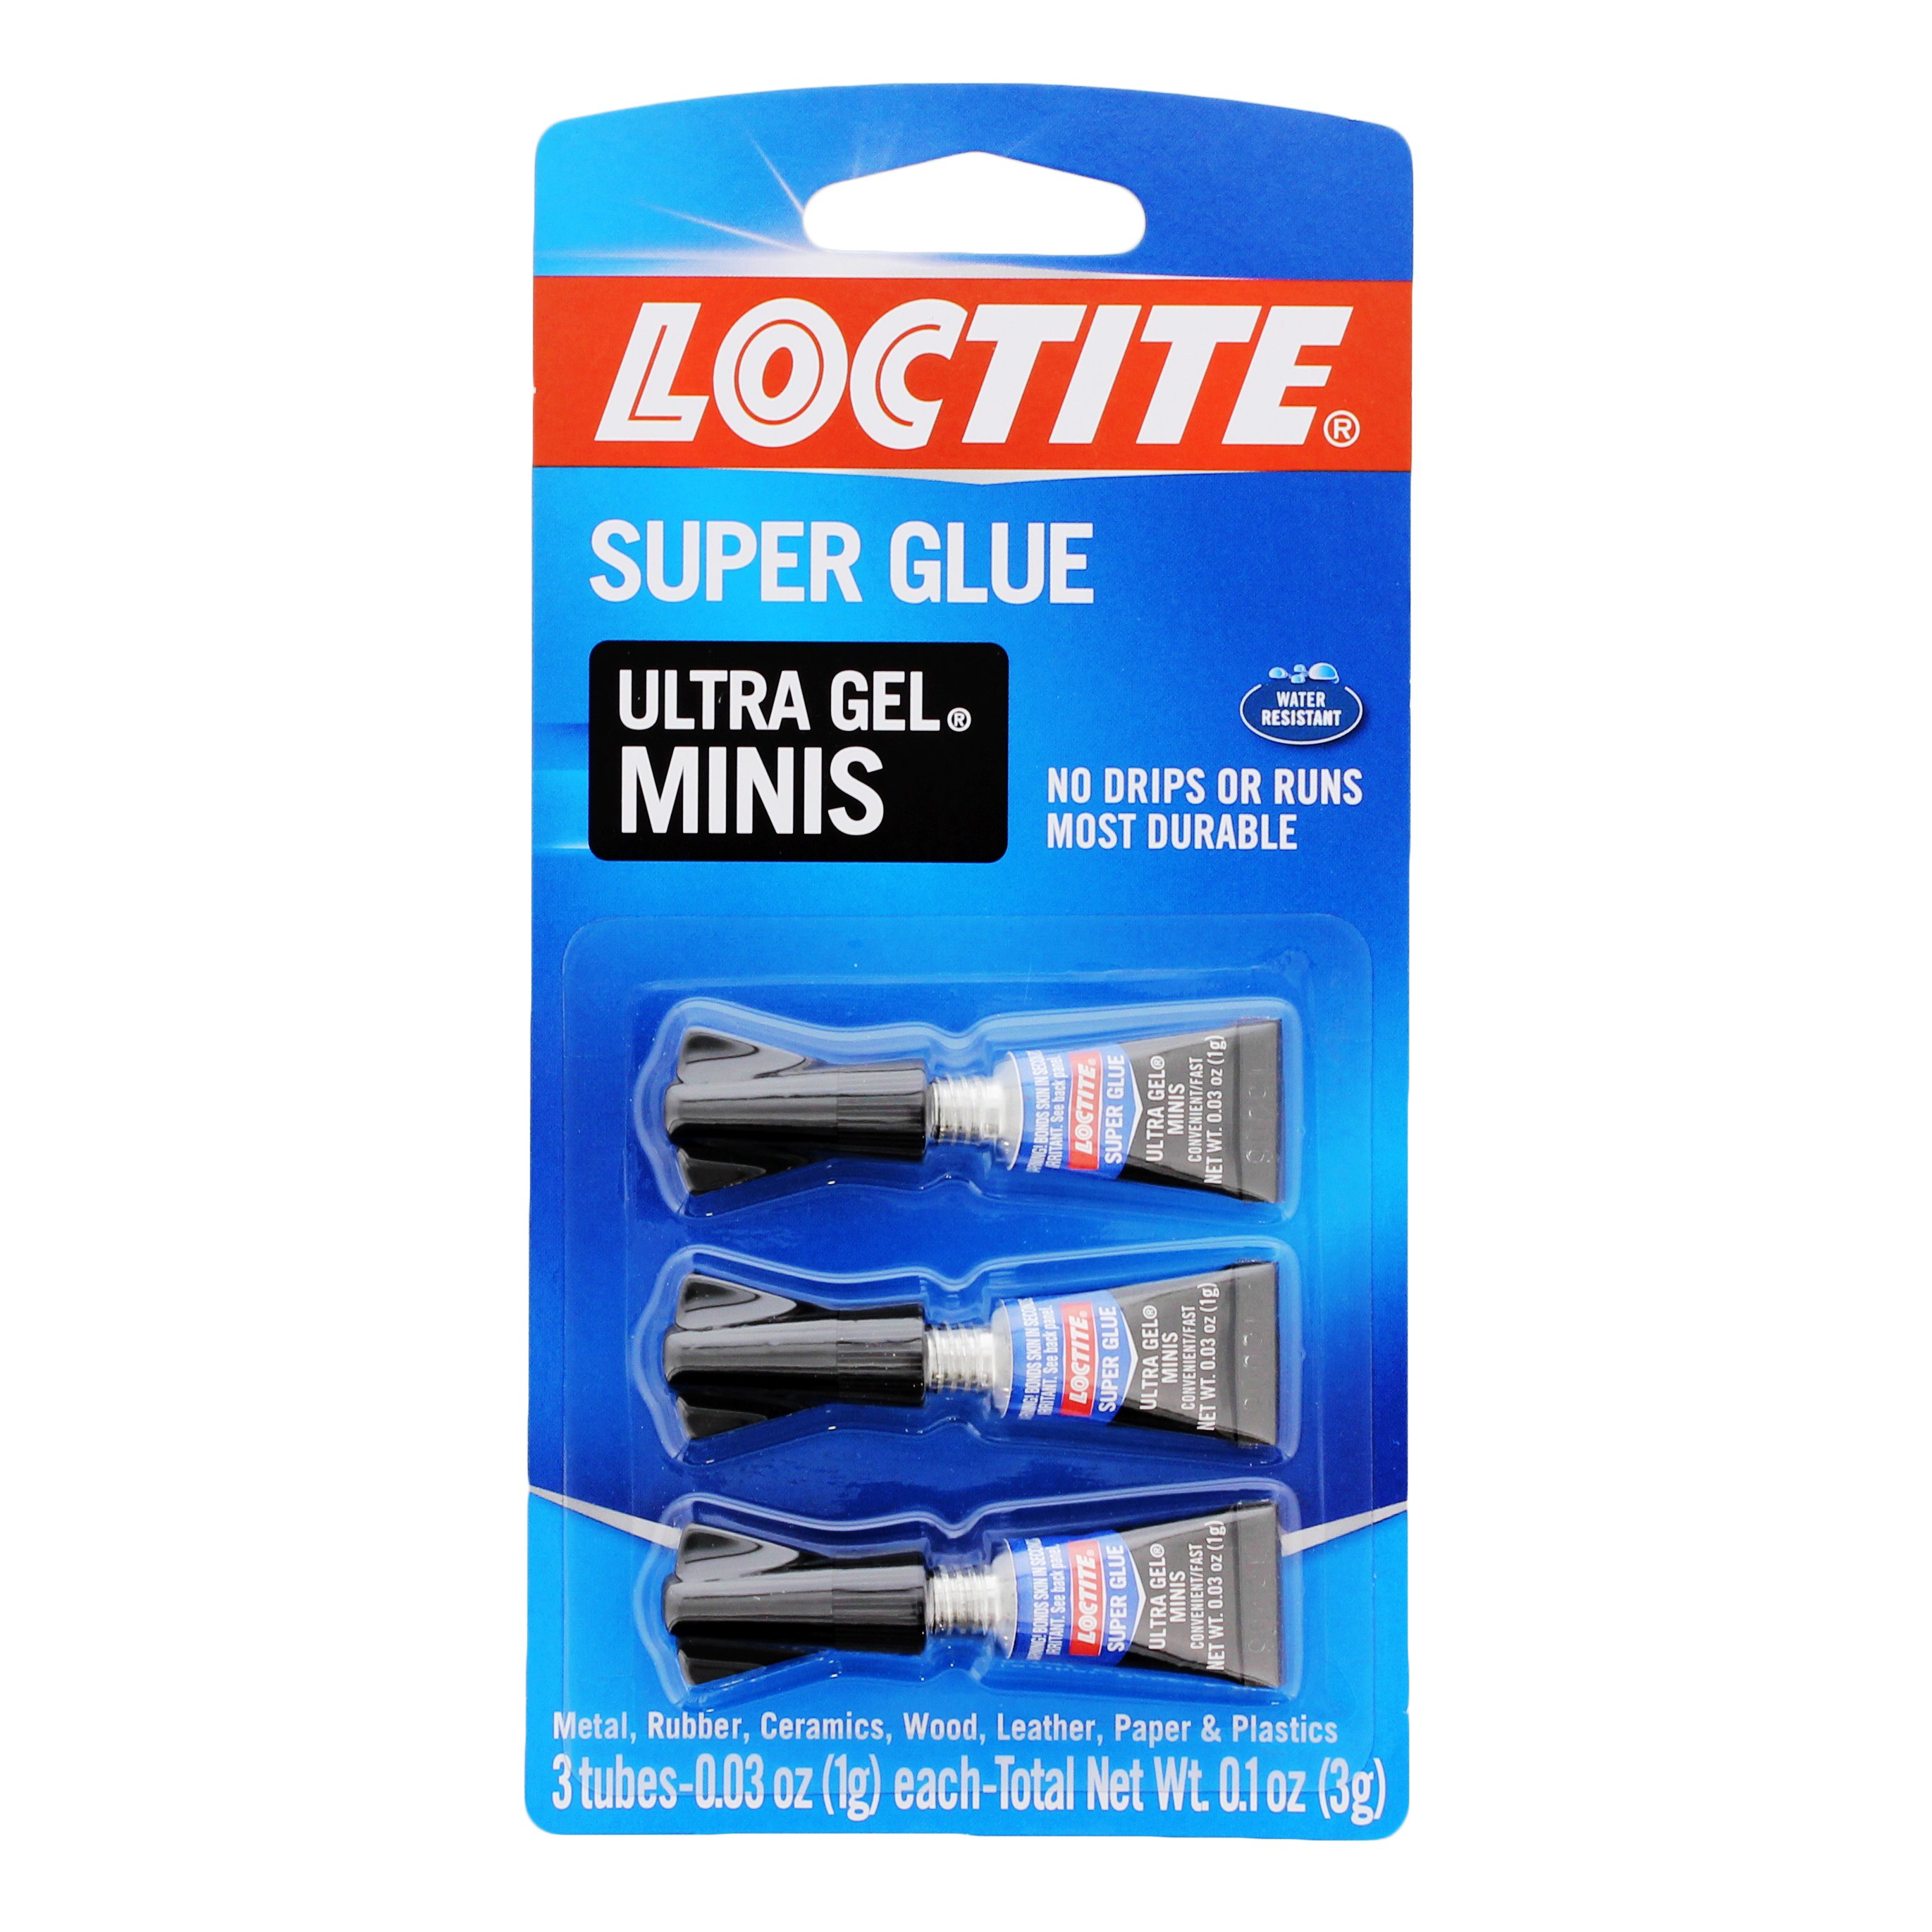 Loctite Super Glue-3 Control 3g Glue